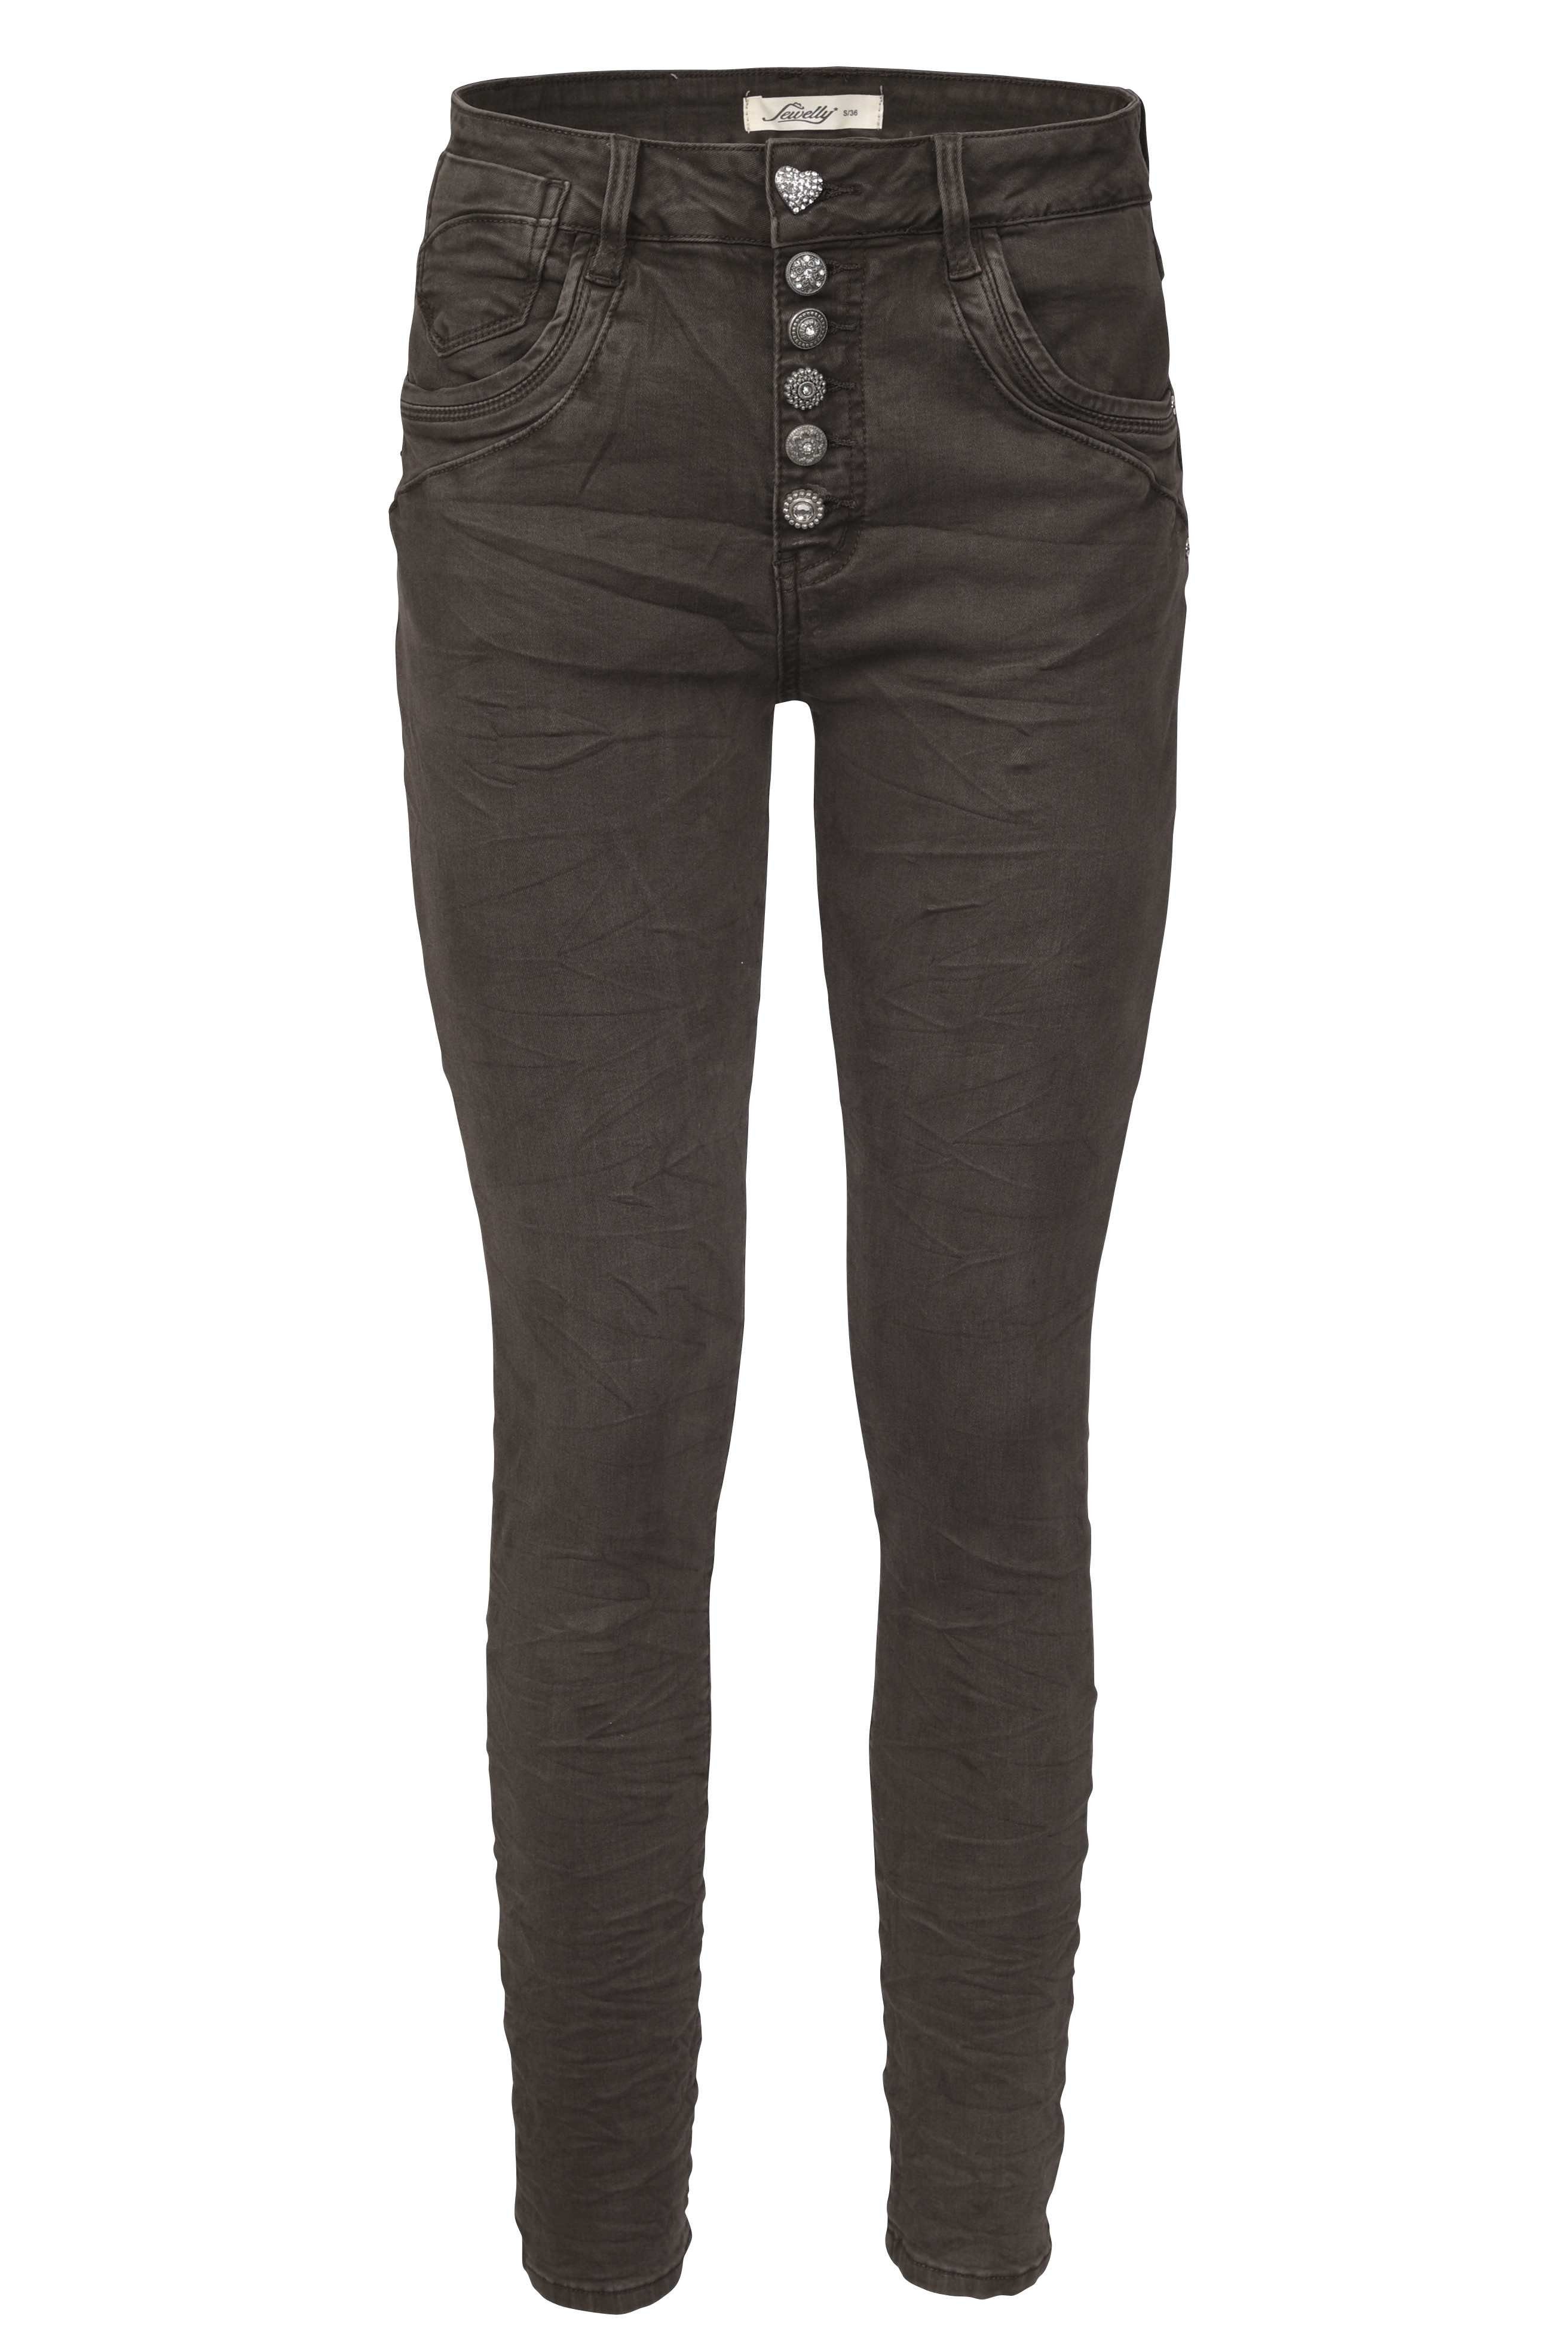 Braune Jeans für Damen kaufen » Braune OTTO | Jeanshosen